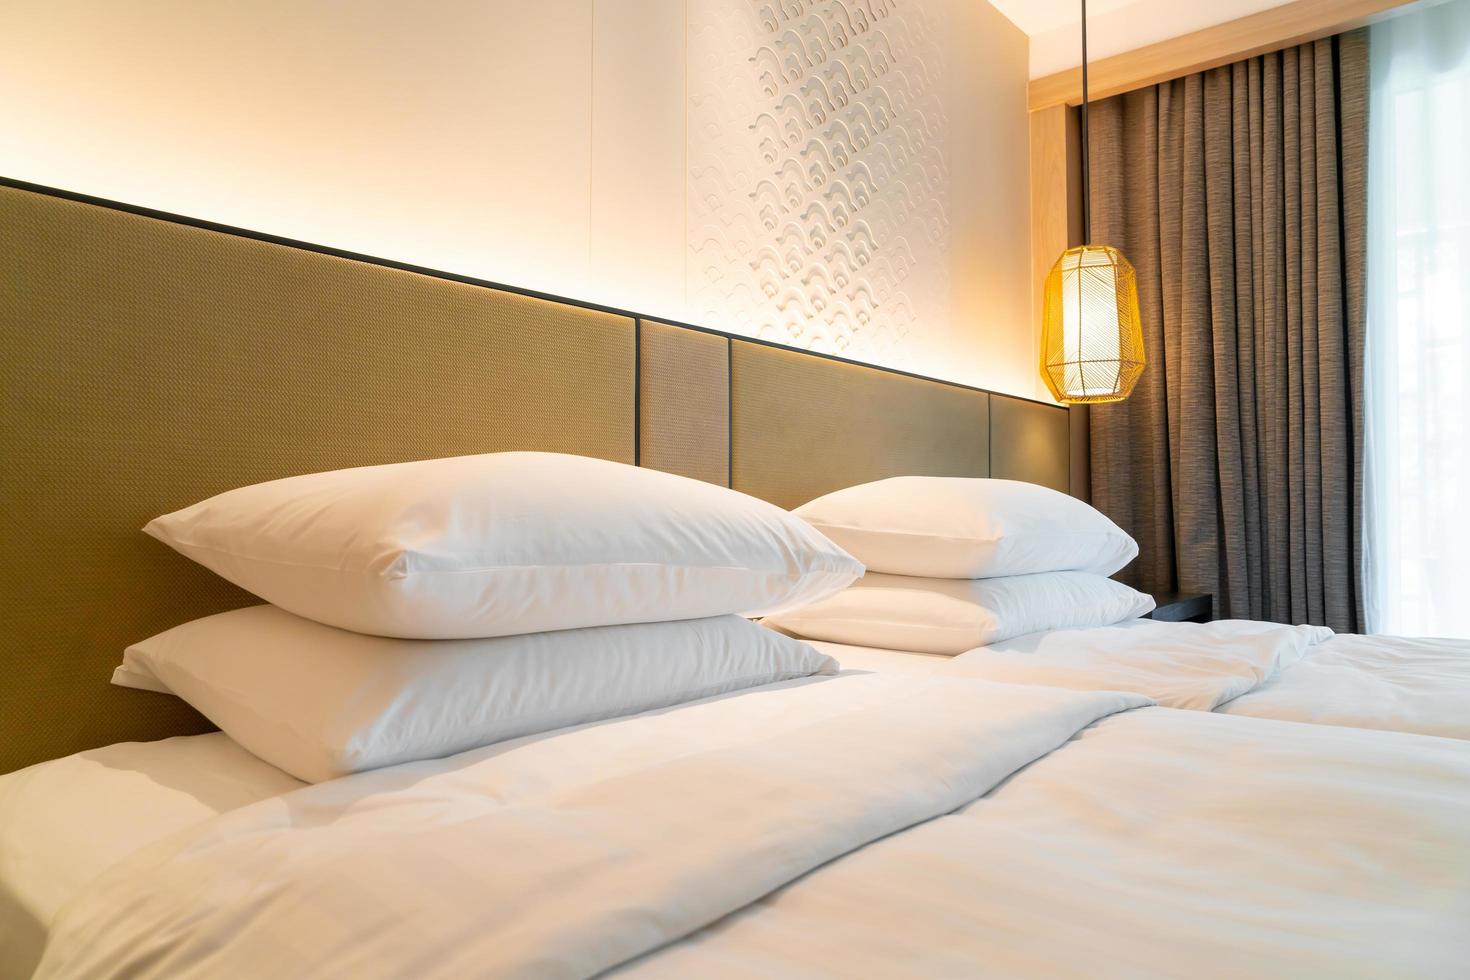 décoration d'oreiller blanc sur le lit dans une chambre d'hôtel photo